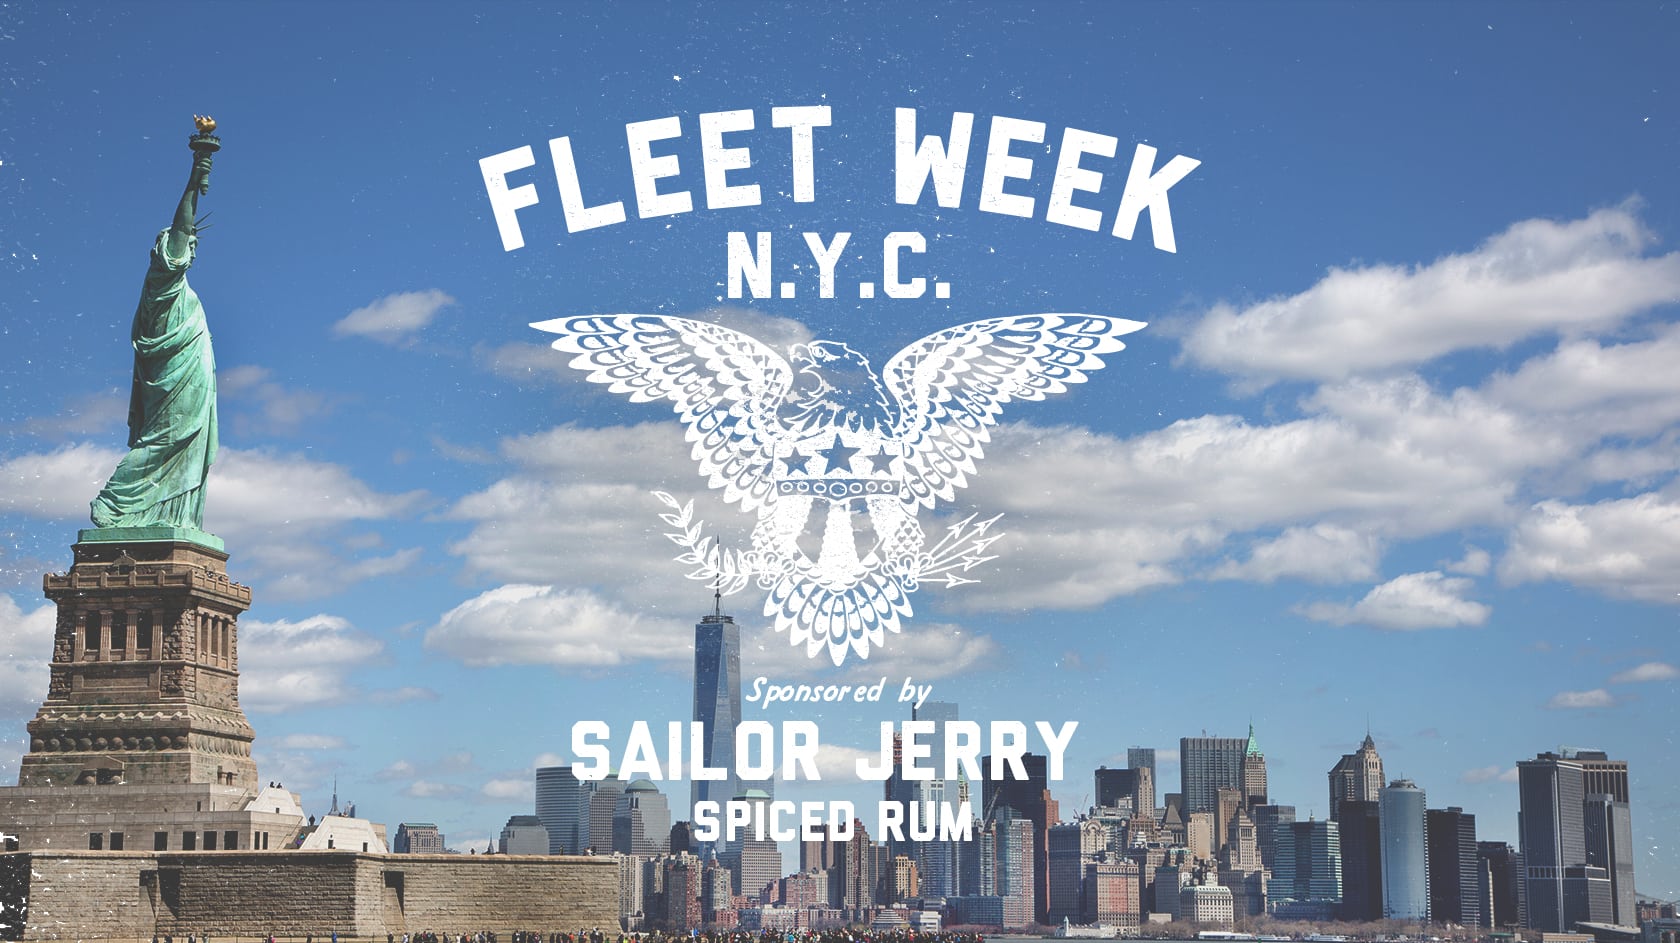 Sailor Jerry Fleet Week